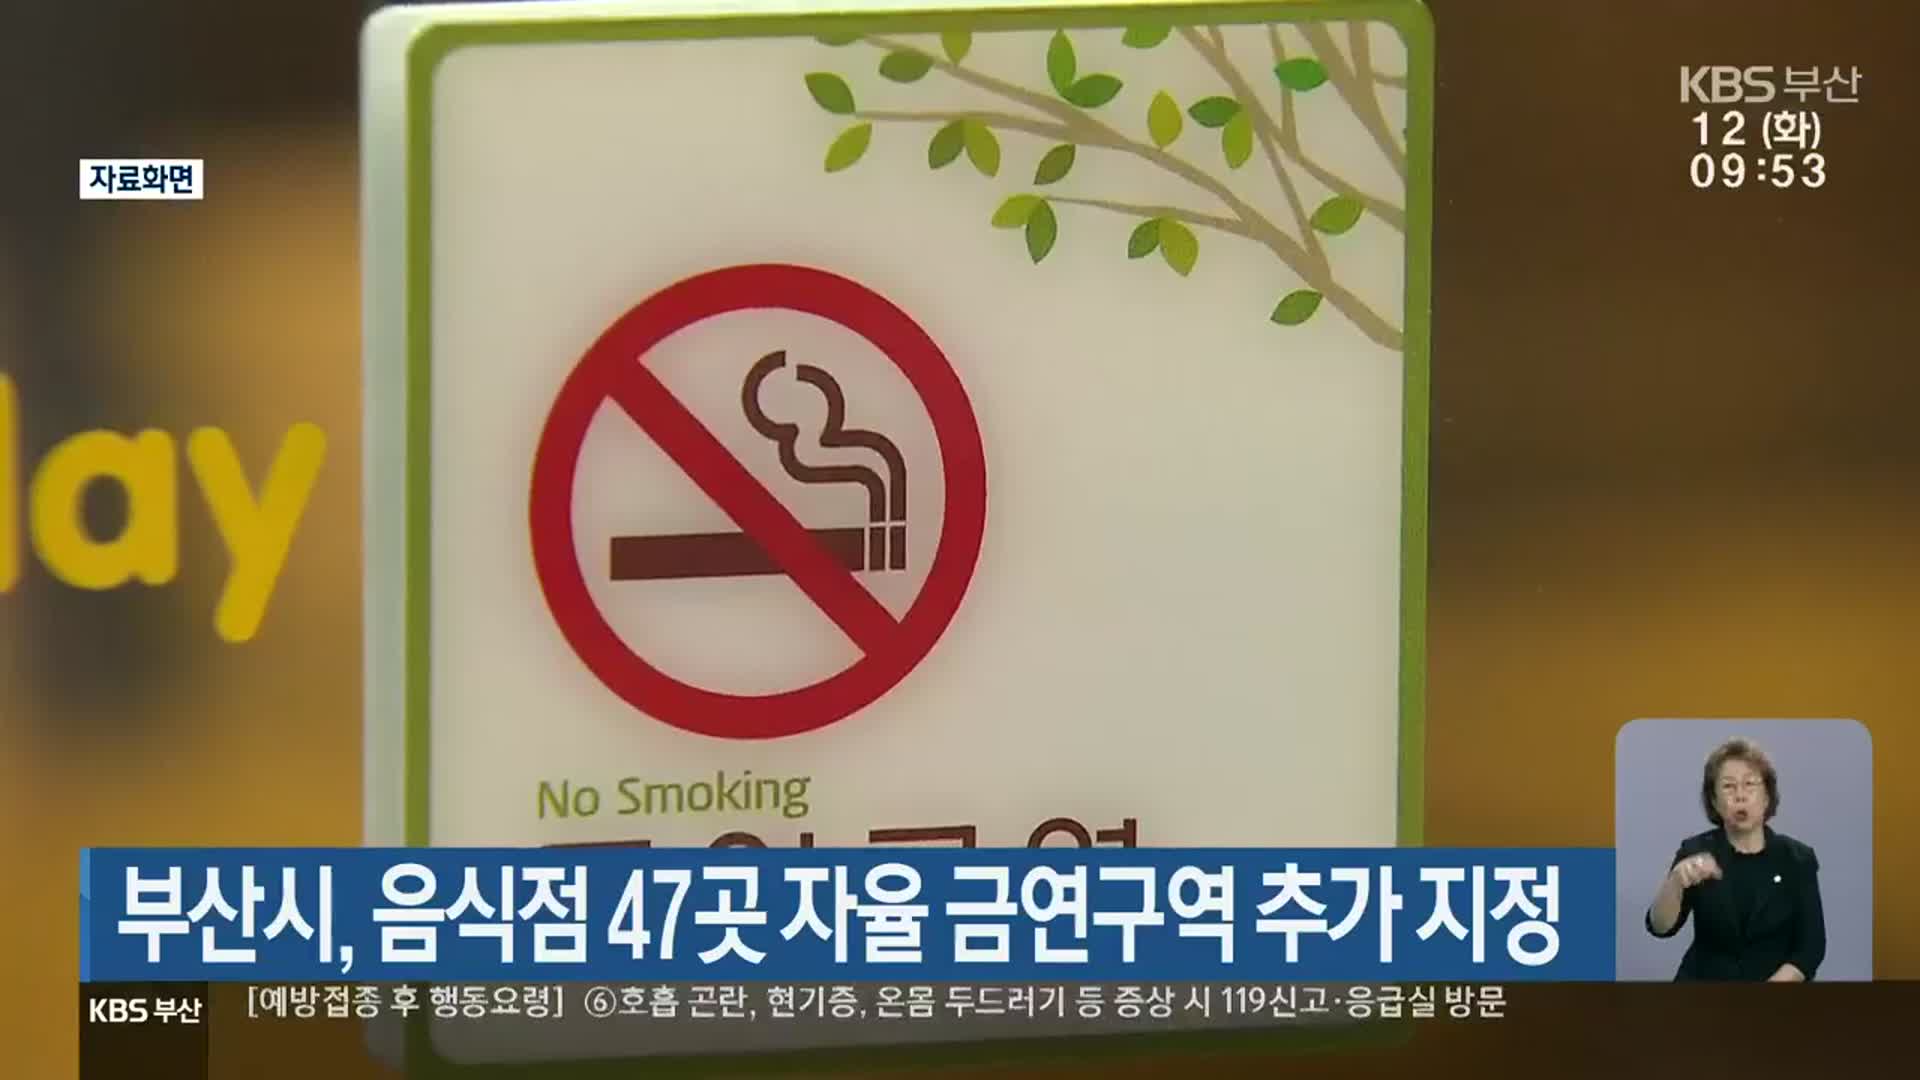 부산시, 음식점 47곳 자율 금연구역 추가 지정